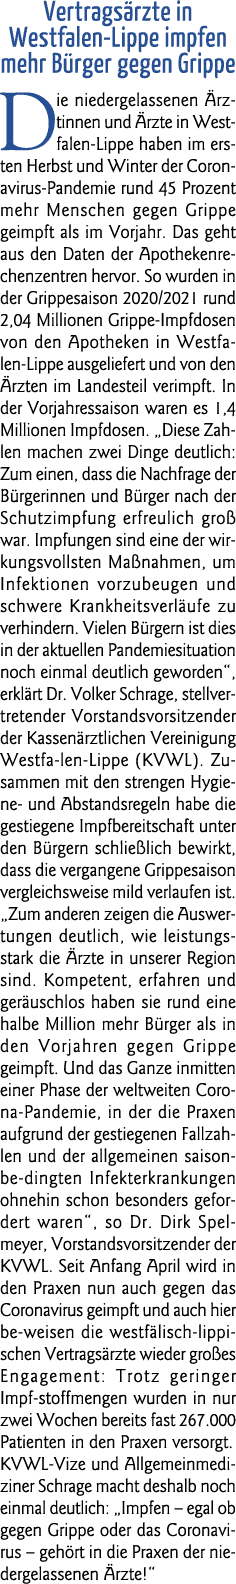  Vertragsärzte in Westfalen-Lippe impfen mehr Bürger gegen Grippe Die niedergelassenen Ärztinnen und Ärzte in Westfal   